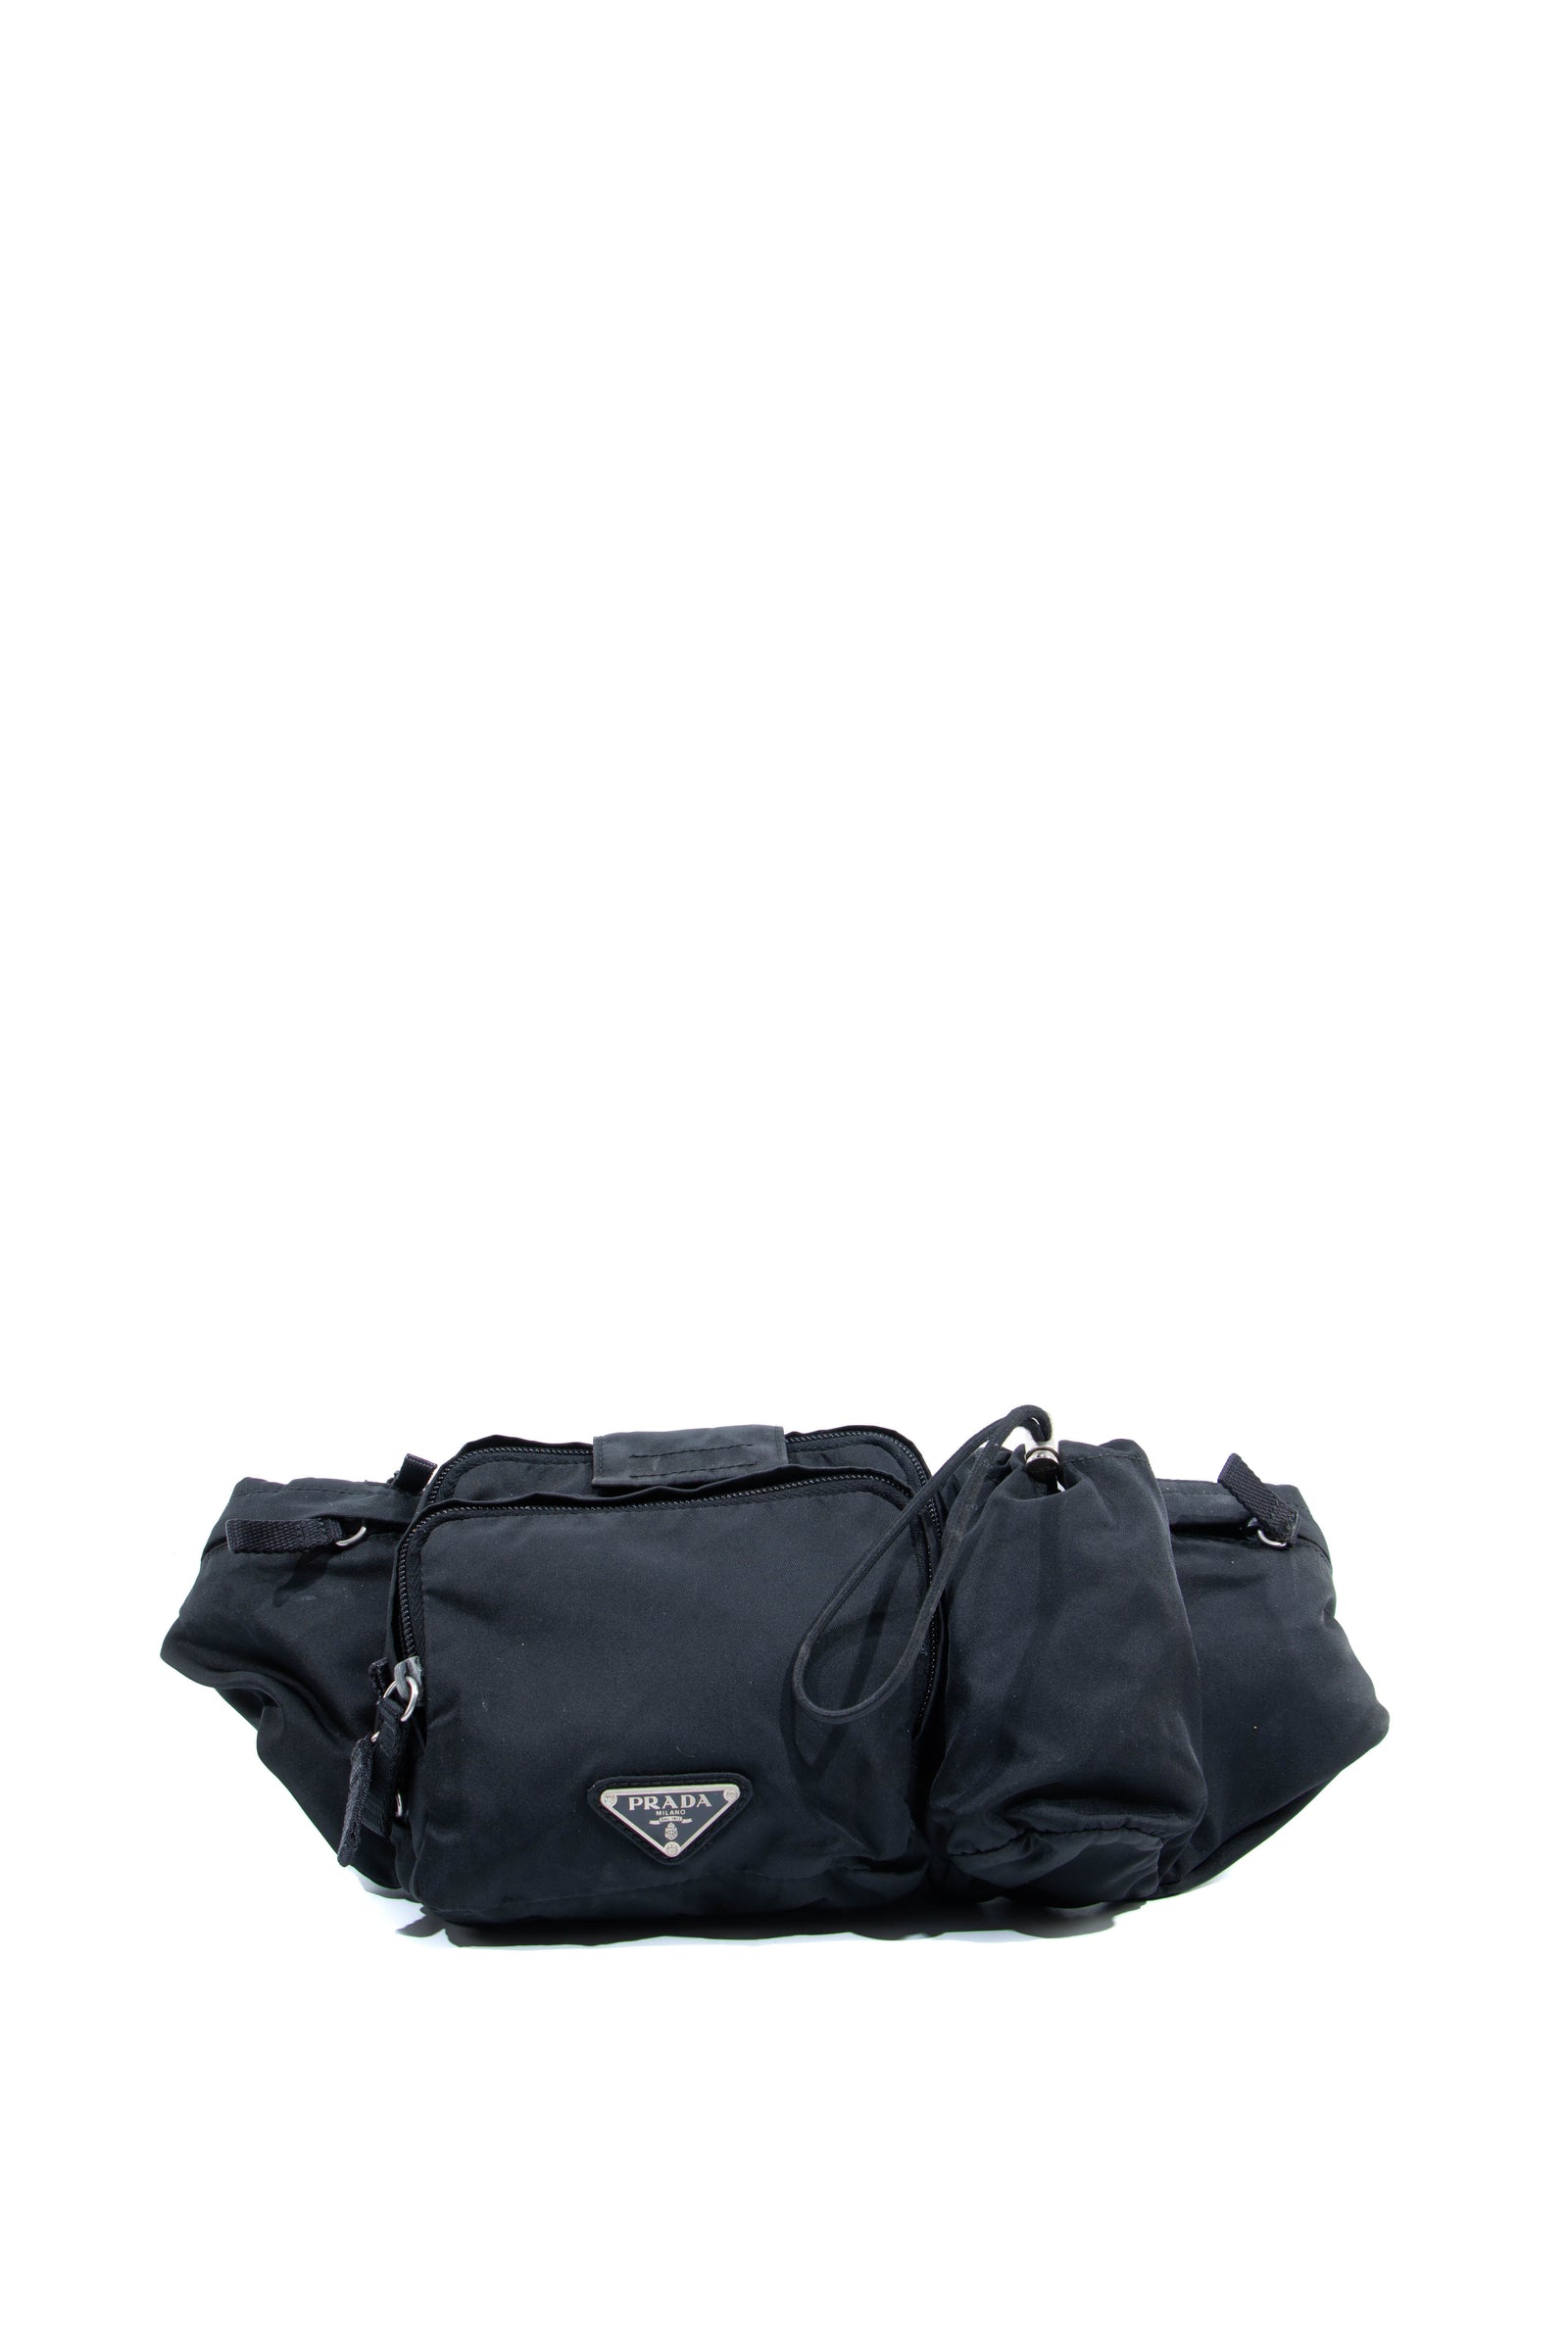 She's World - PRADA vintage Nylon Travel Bag With Lock/Key